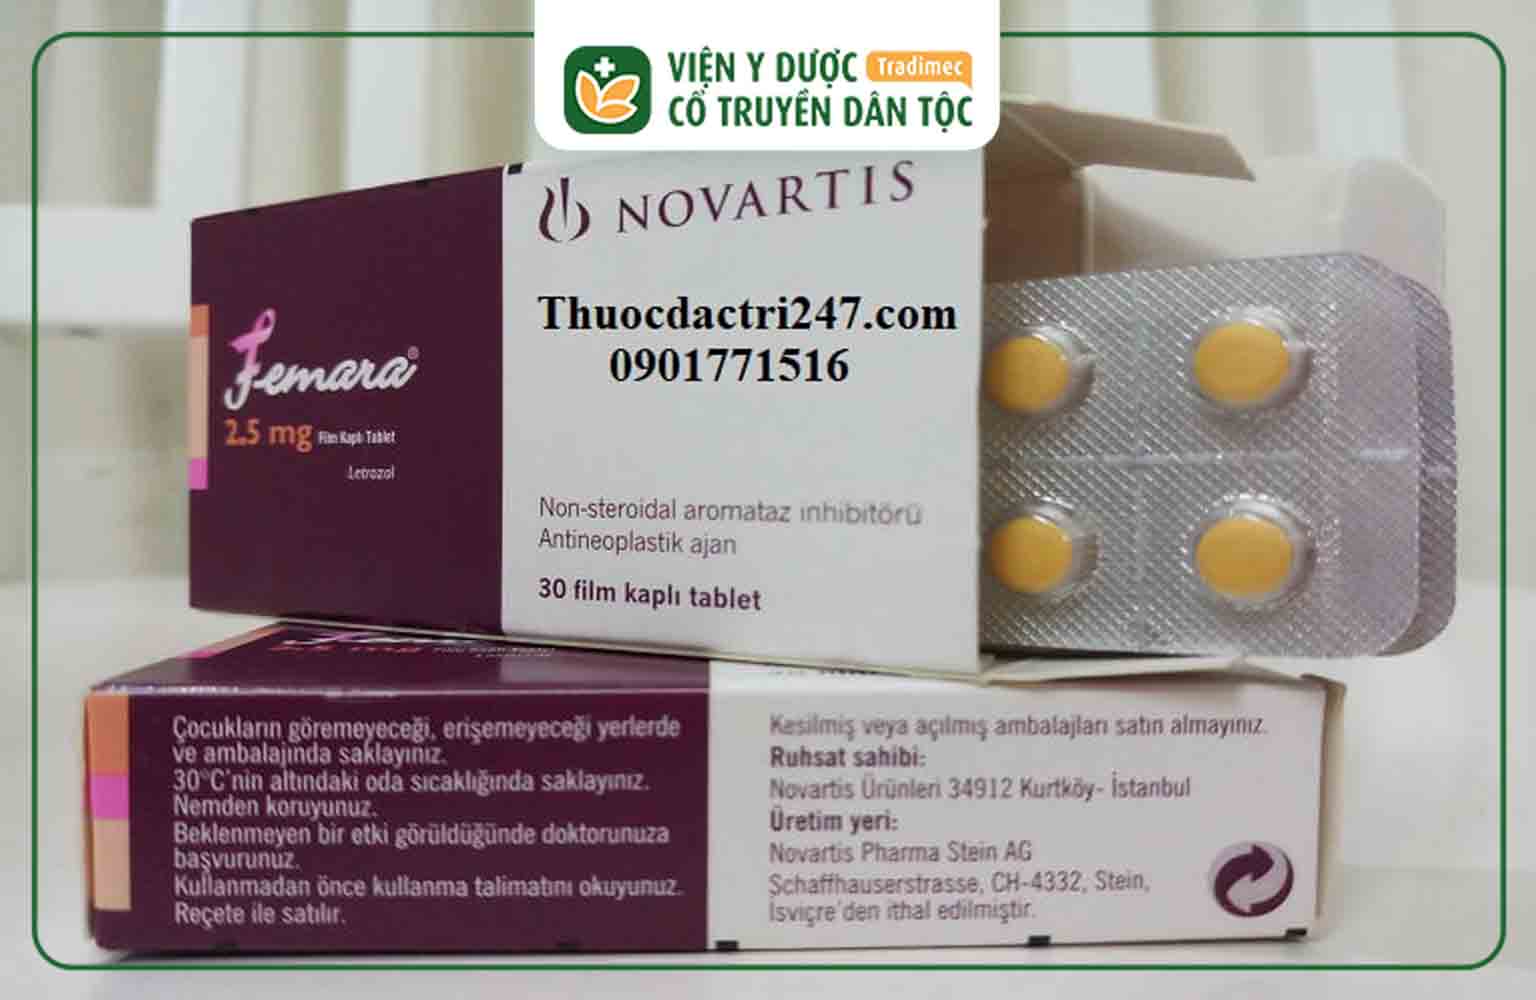 Femara là thuốc kích trứng có thành phần chính là Letrozole hàm lượng 2.5mg